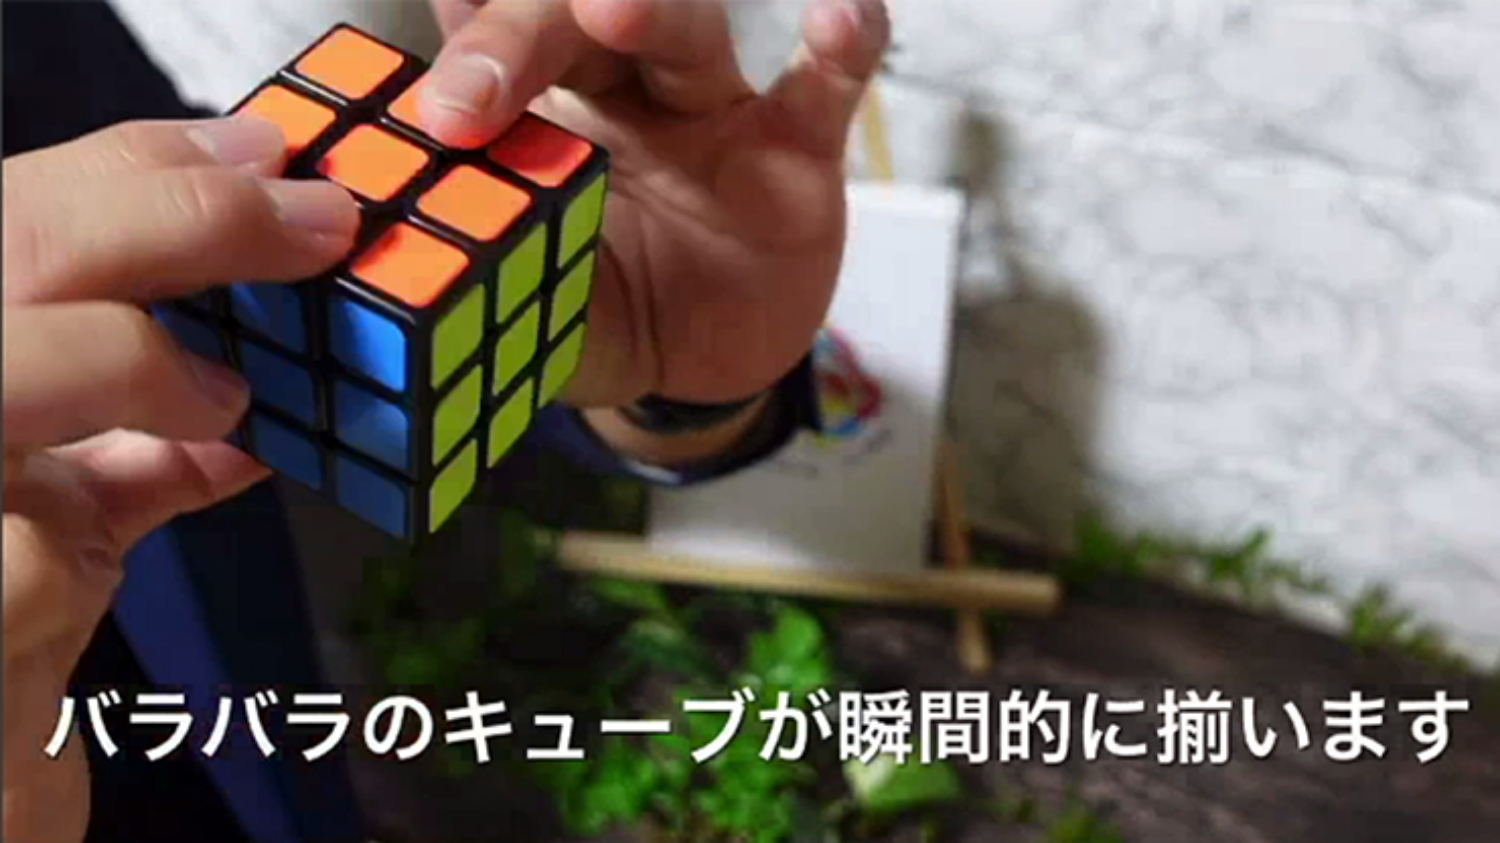 [북큐브 체인지]Book Cube Change 큐브무늬를 예언해주는 책입니다.